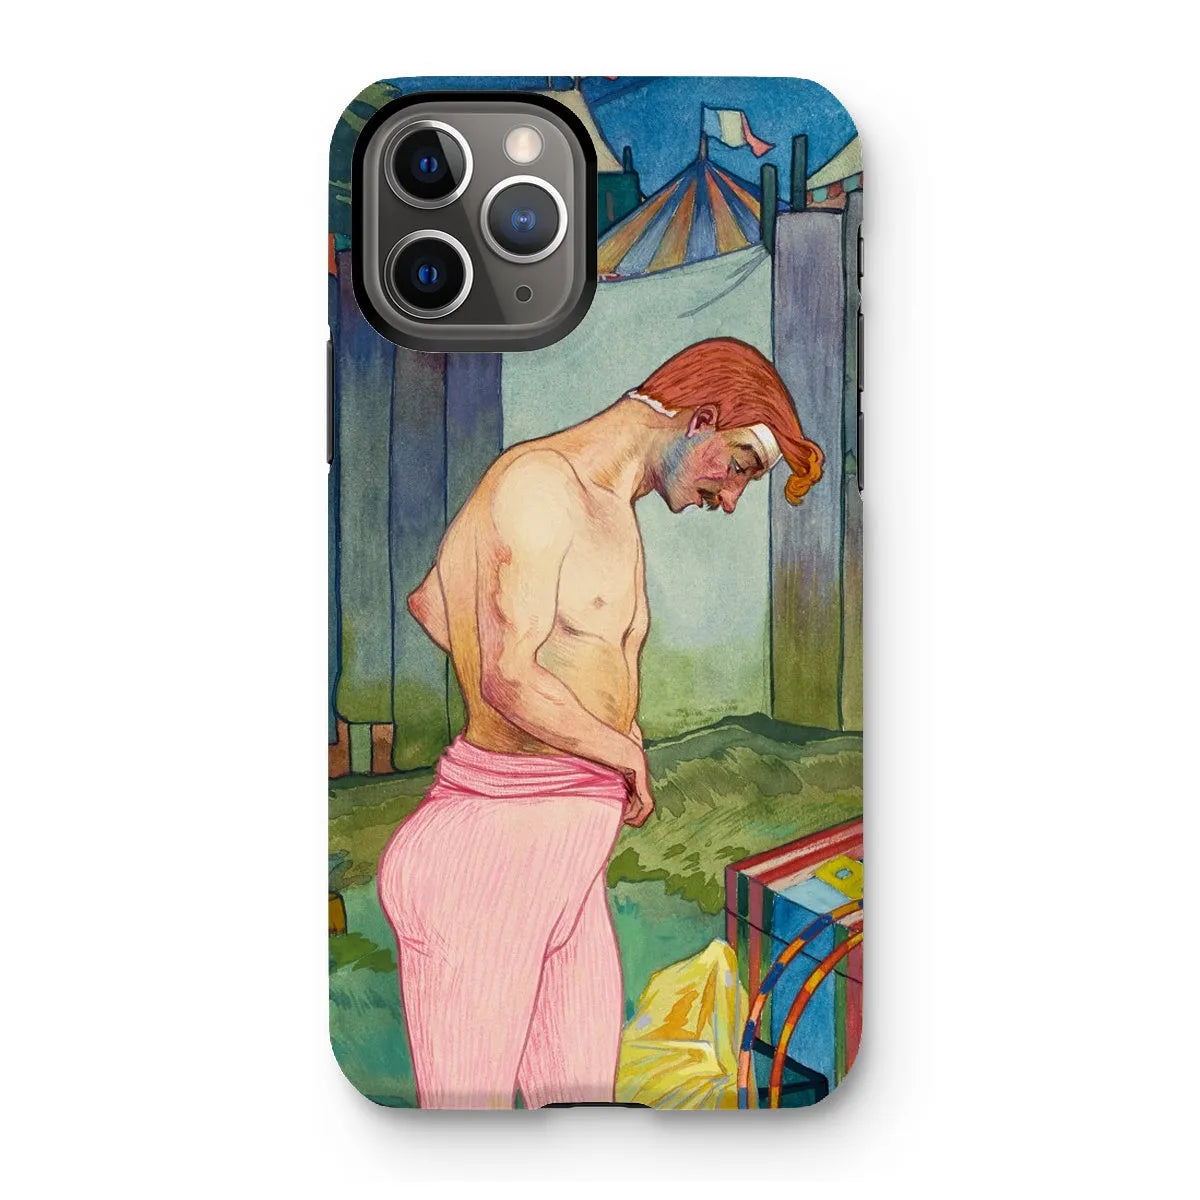 Le Cirque Corvi - Georges De Feure Art Nouveau Phone Case - Iphone 11 Pro / Matte - Mobile Phone Cases - Aesthetic Art